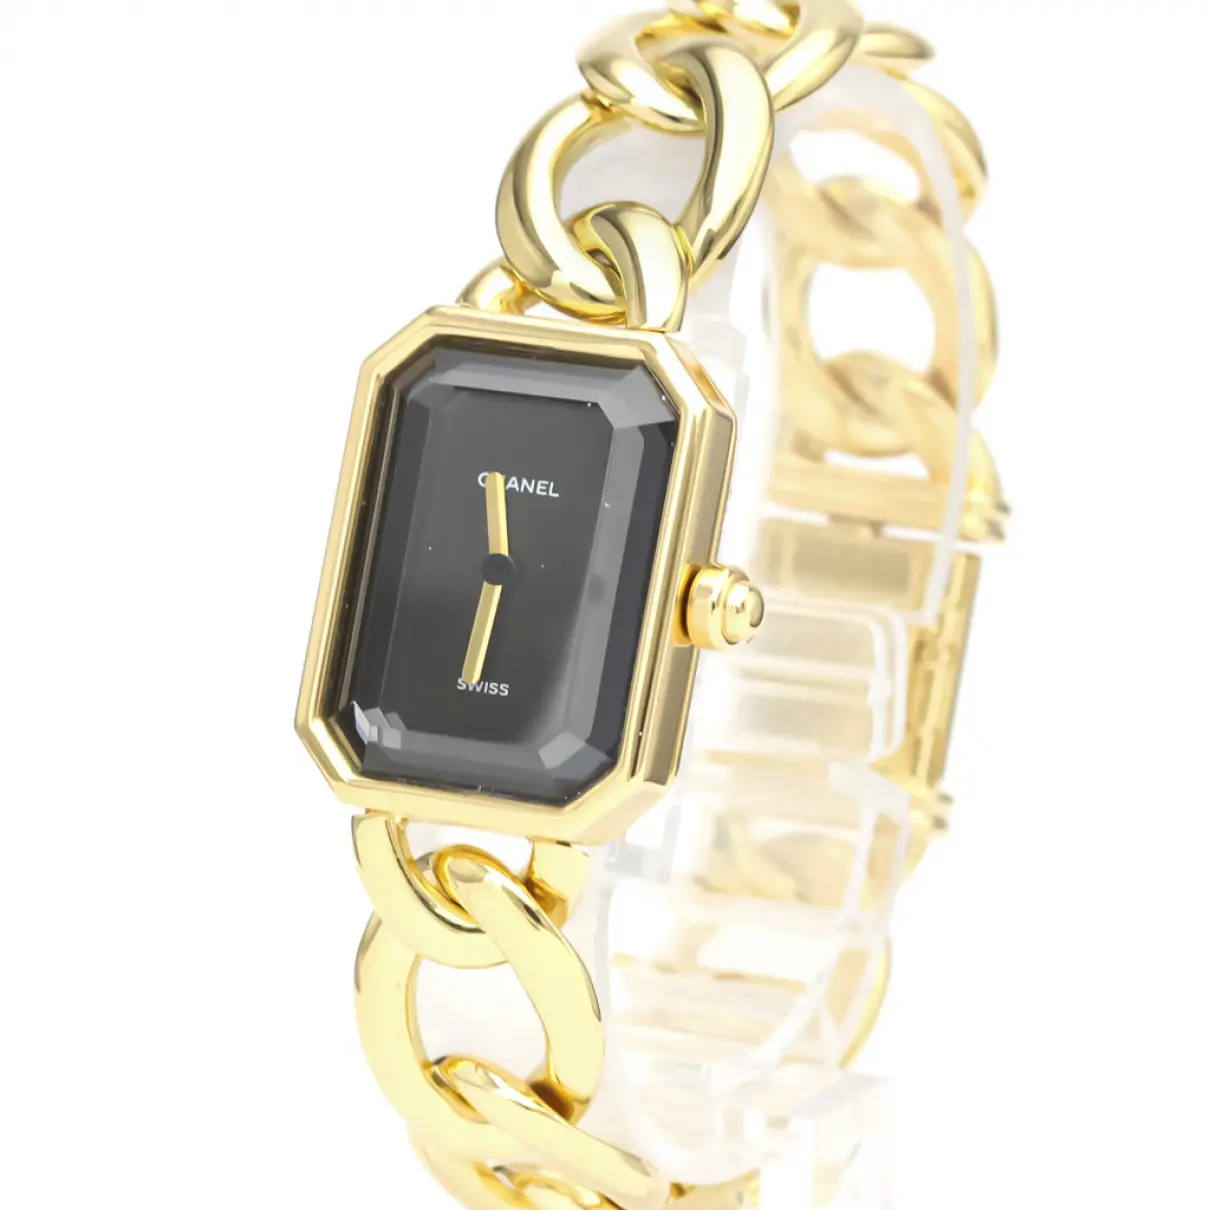 Buy Chanel Première Chaîne yellow gold watch online